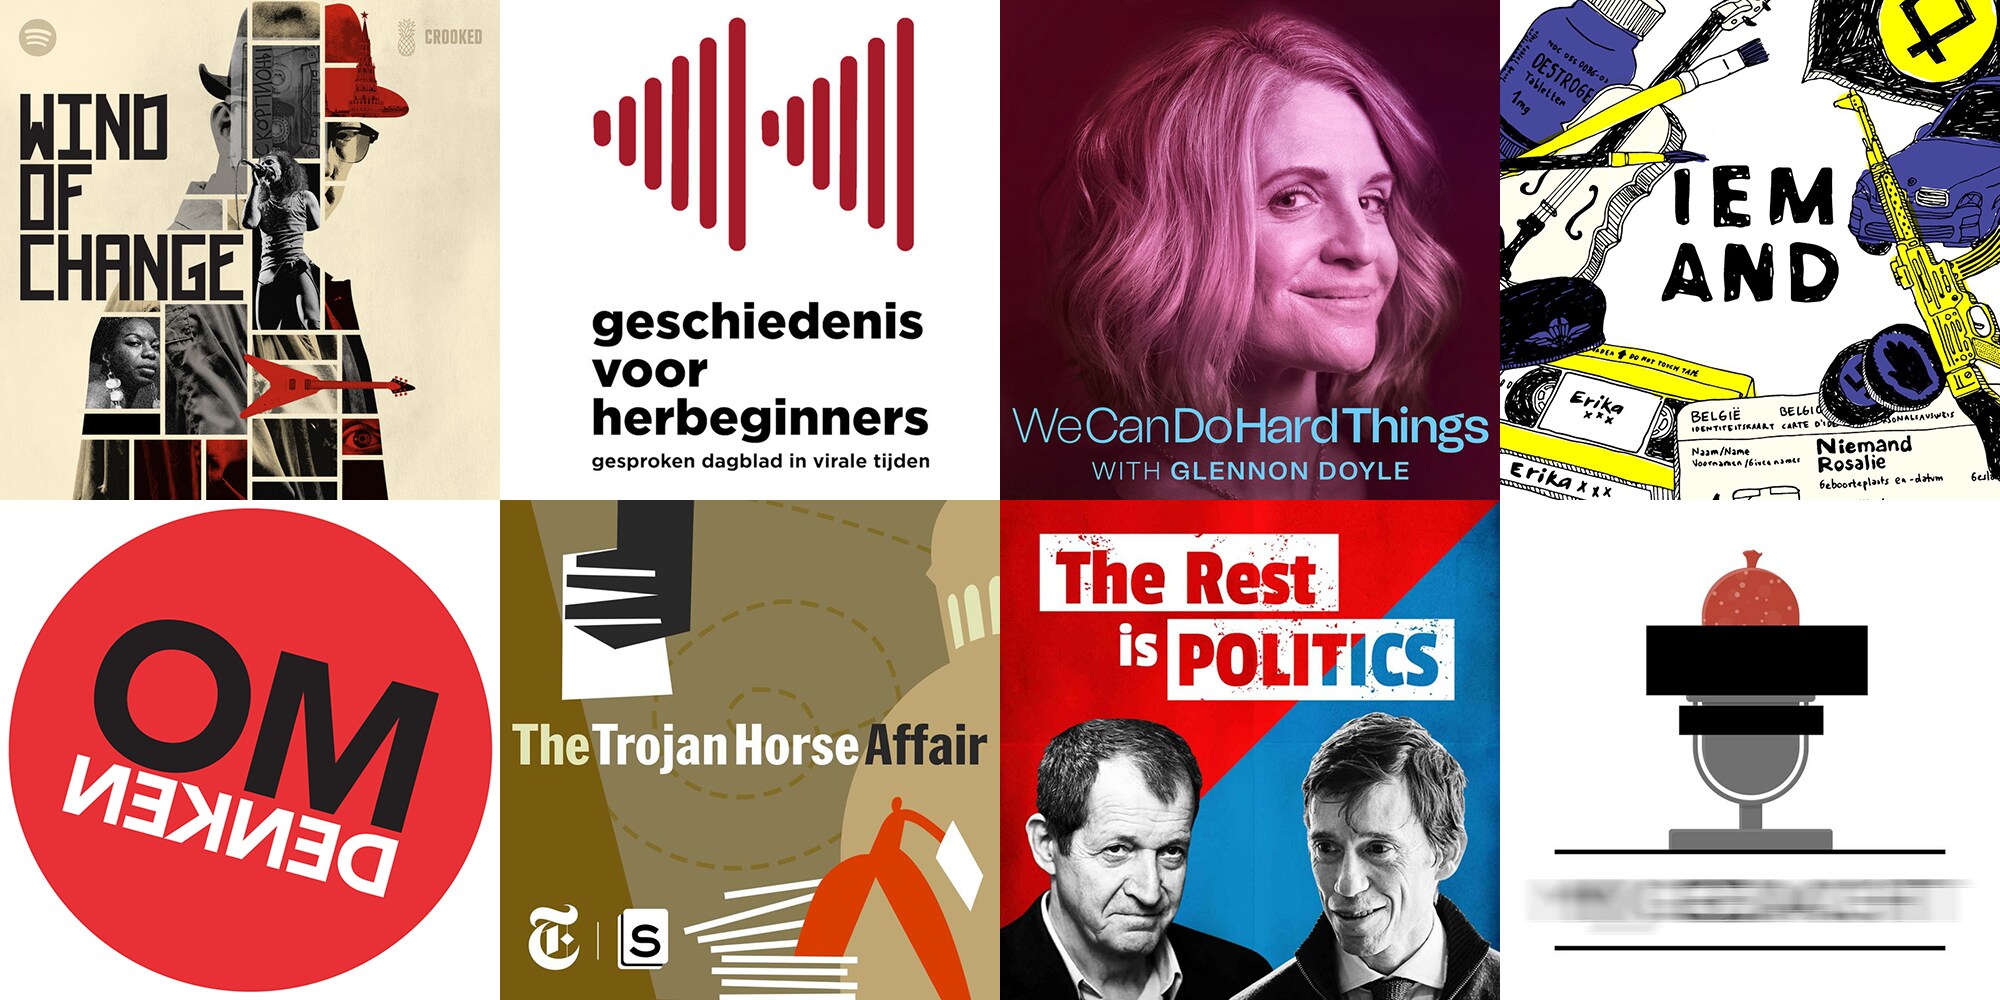 Van jolige satire tot keiharde politiek: deze 15 podcasts moet je gehoord hebben volgens lezers van De Morgen